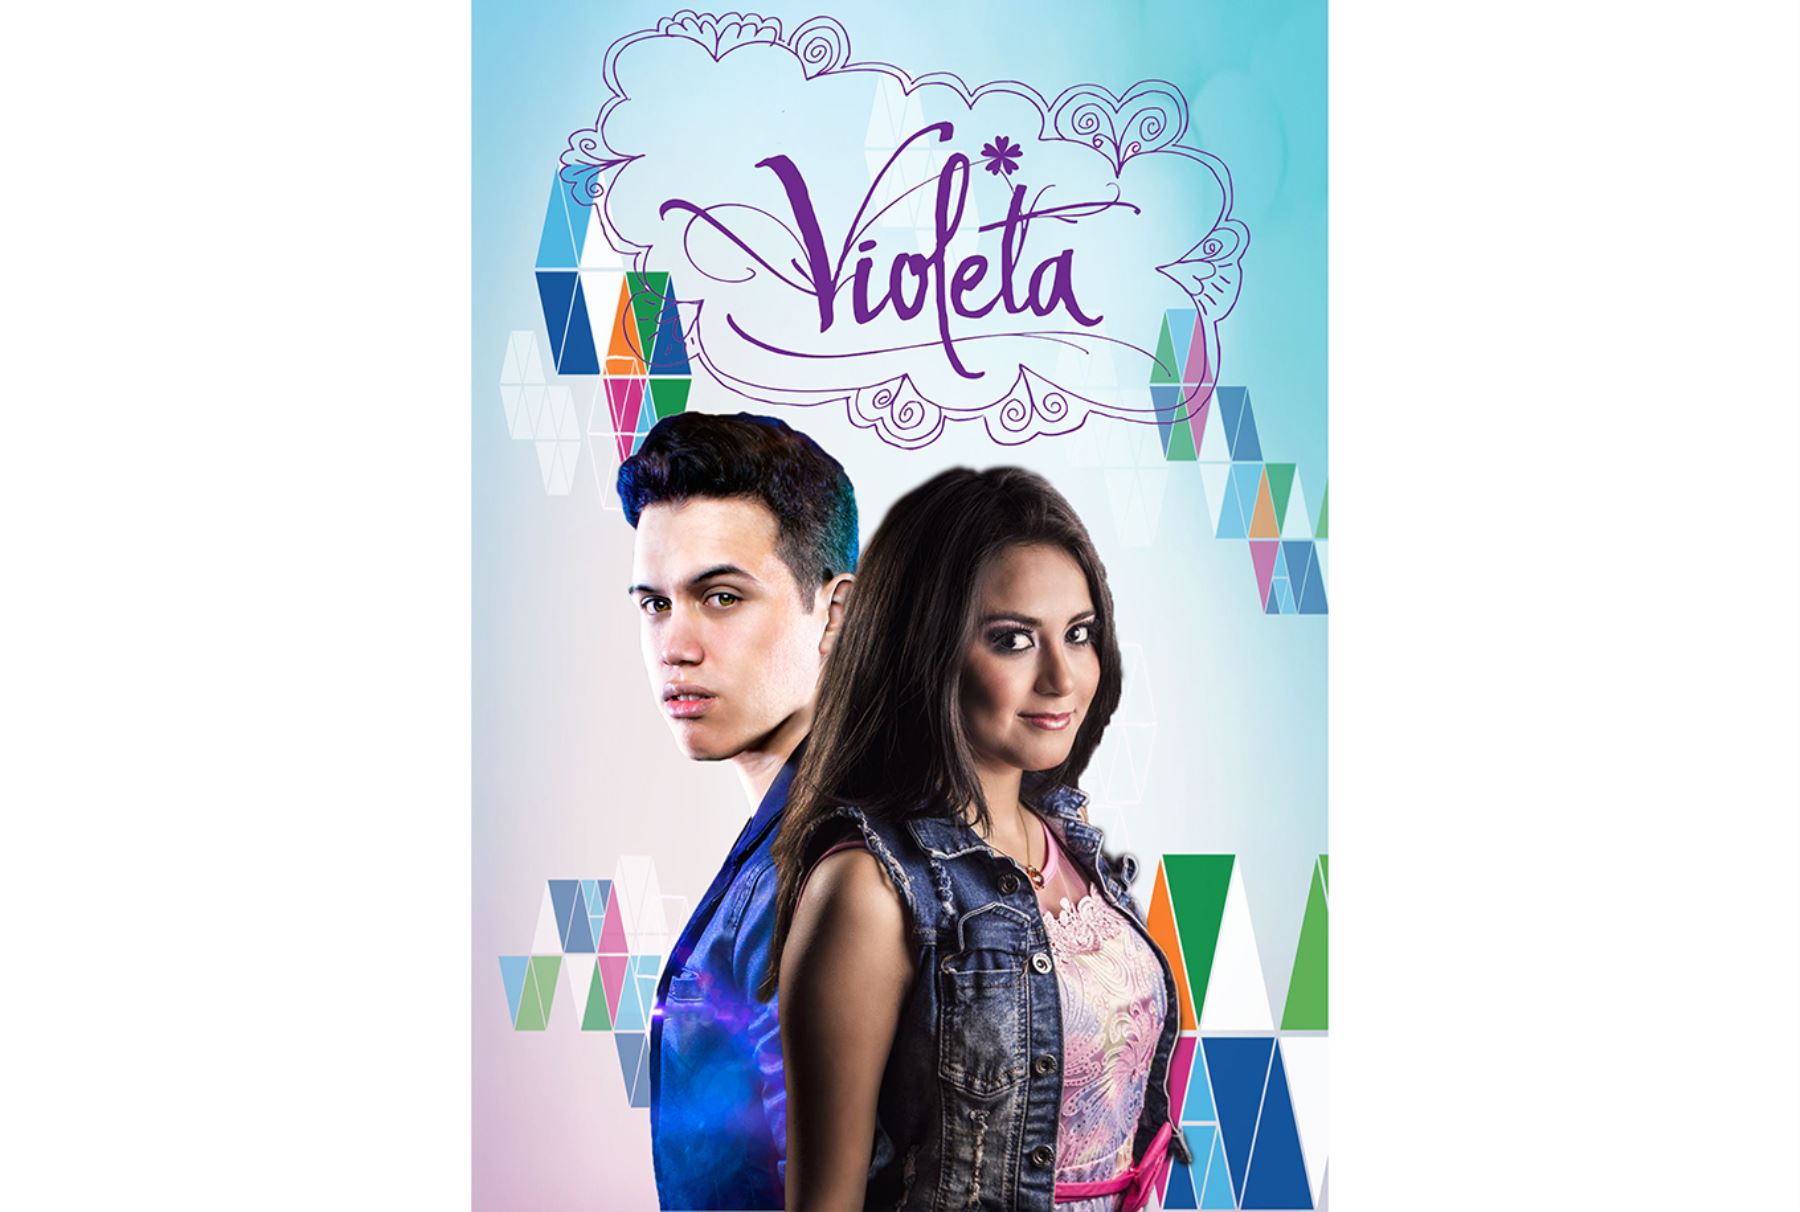 Puesta musical "Violeta".